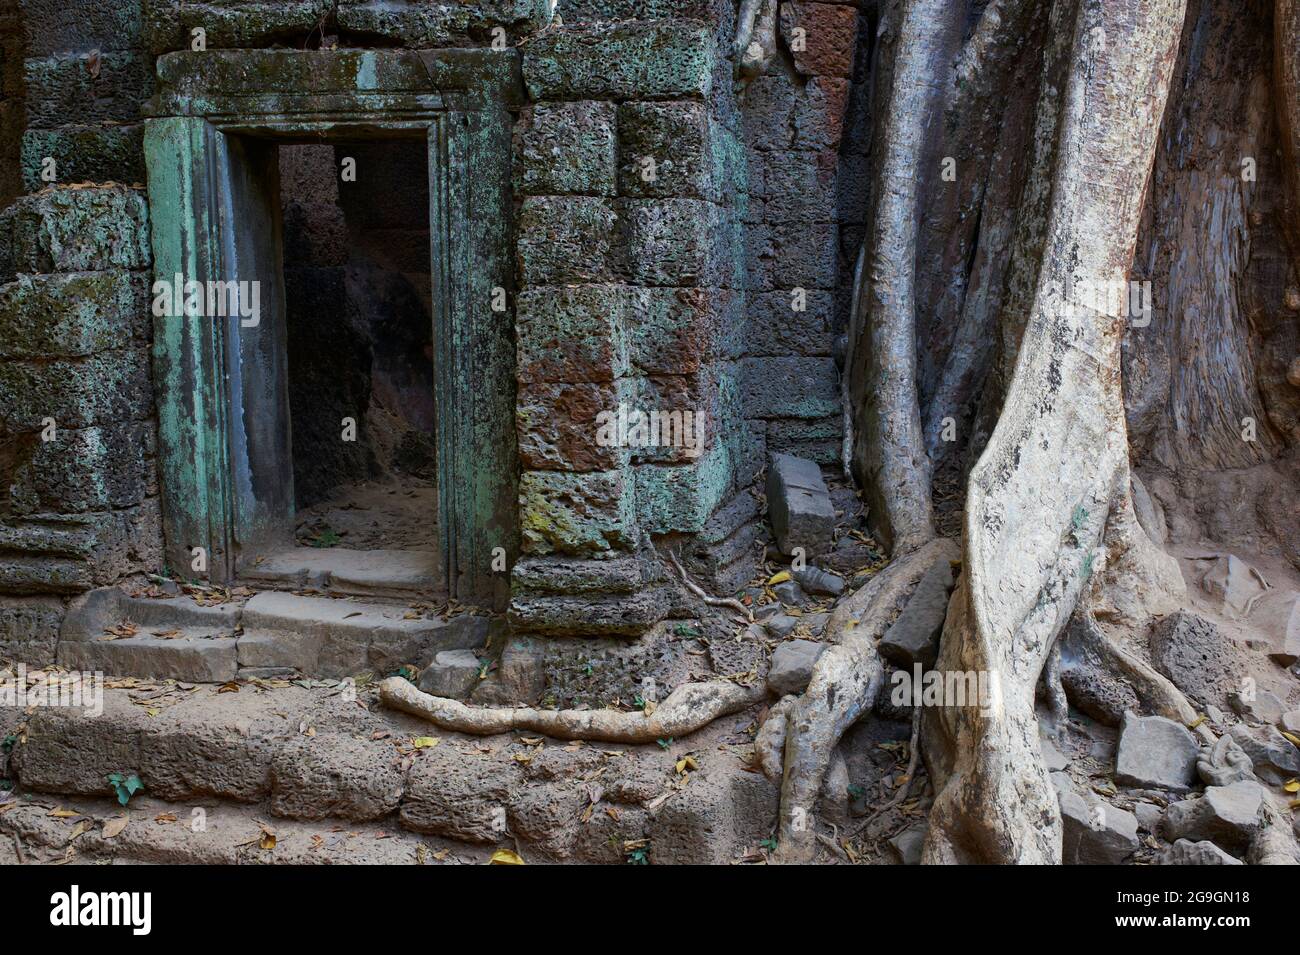 Sud-est asiatico, Cambogia, Siem Reap Provincia, sito di Angkor, patrimonio mondiale dell'UNESCO dal 1992, Ta Prohm tempio costruito nel 1186 dal re Jayavarman VI Foto Stock